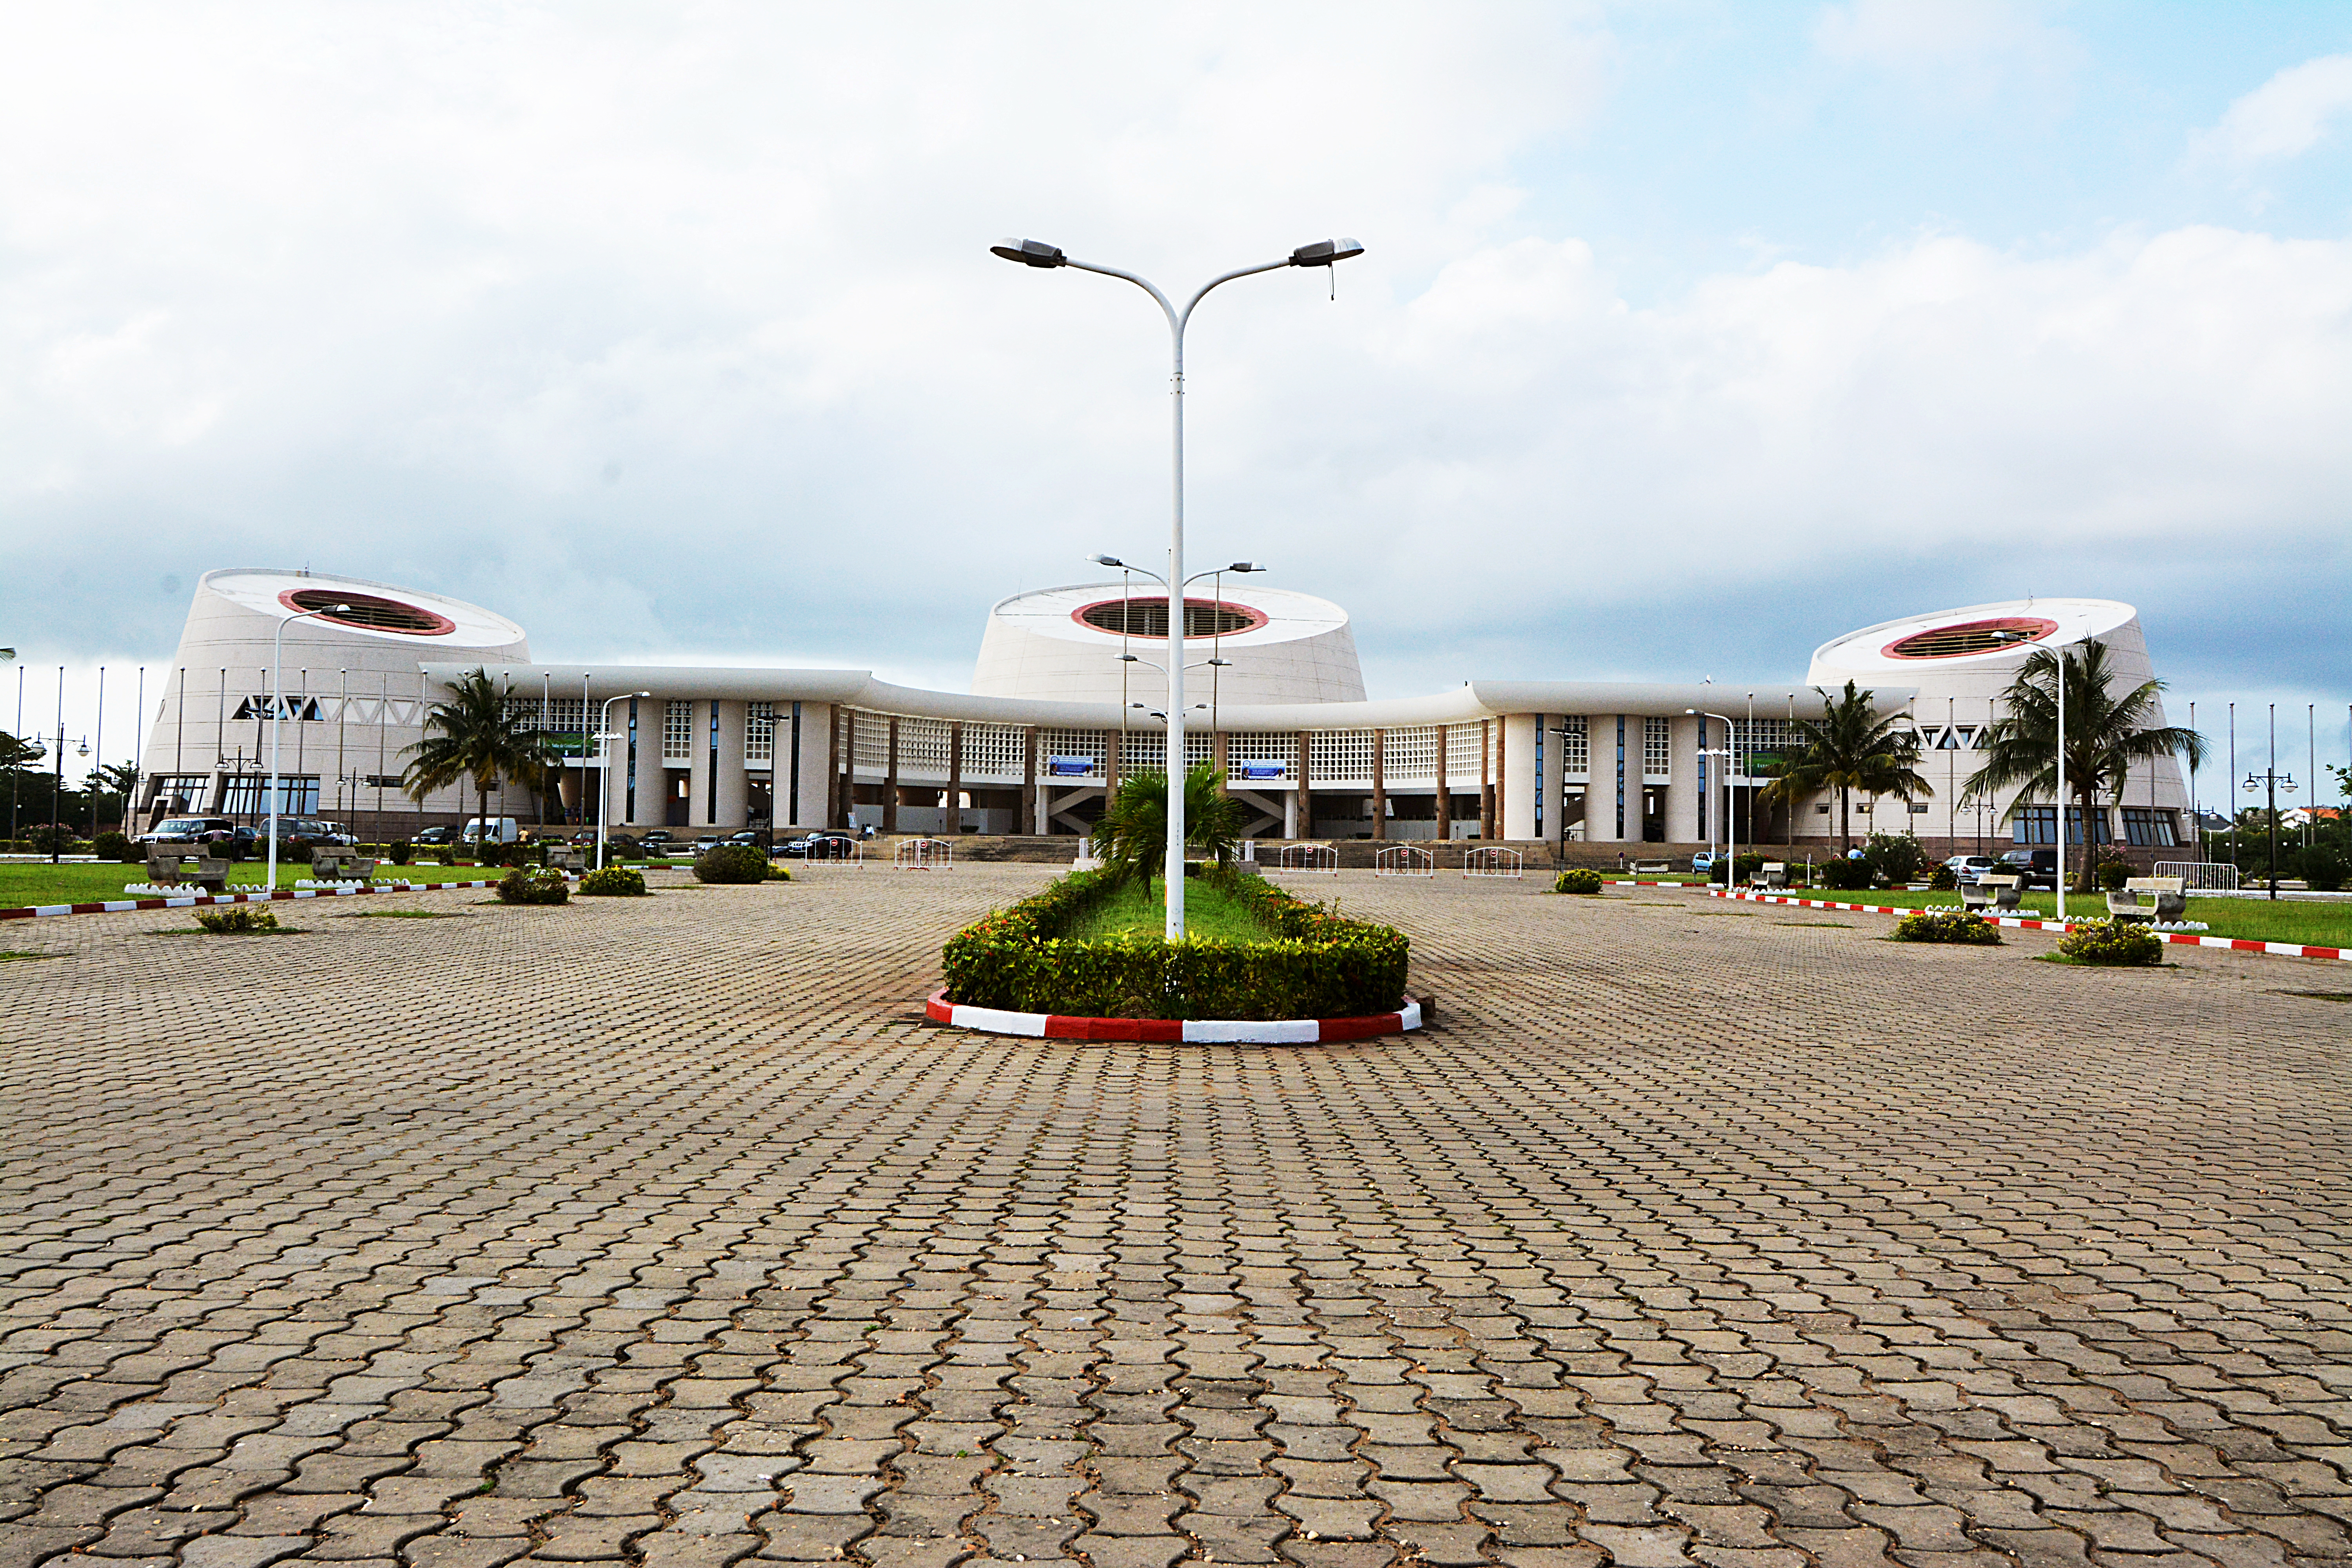 Congress Center of Cotonou, Benin